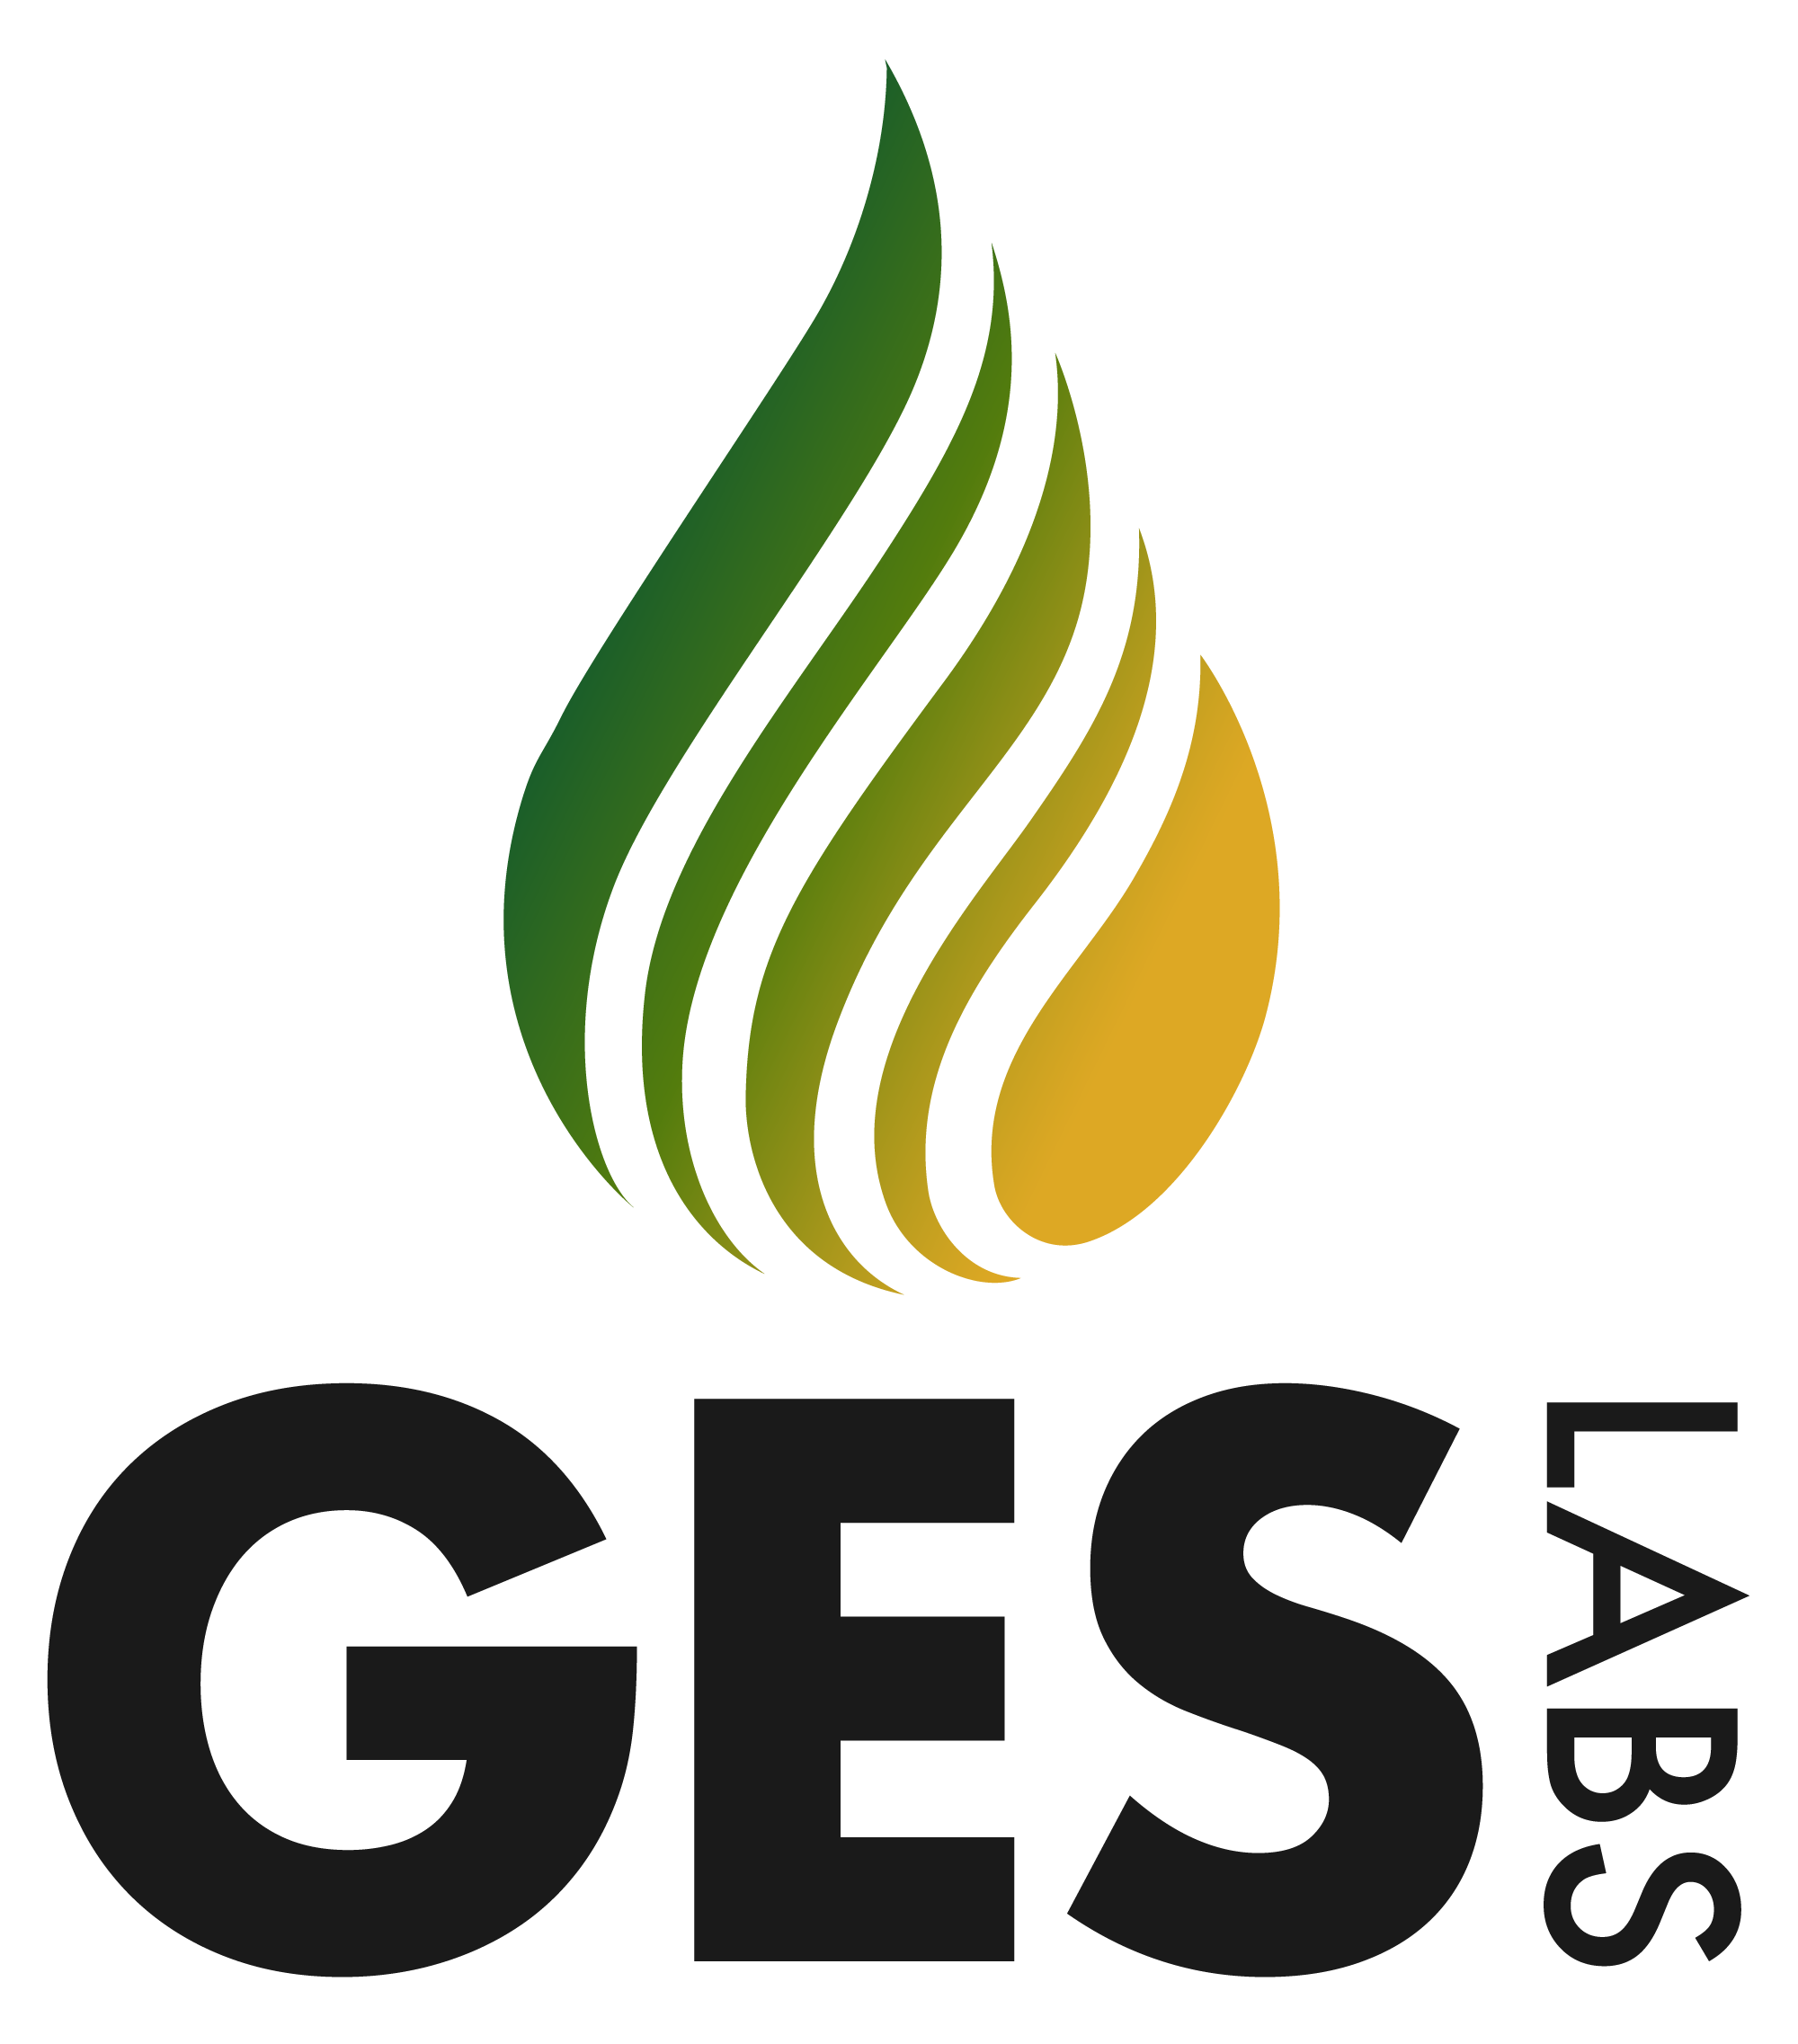 GES-Logo-Stacked-Black-Transparent.png